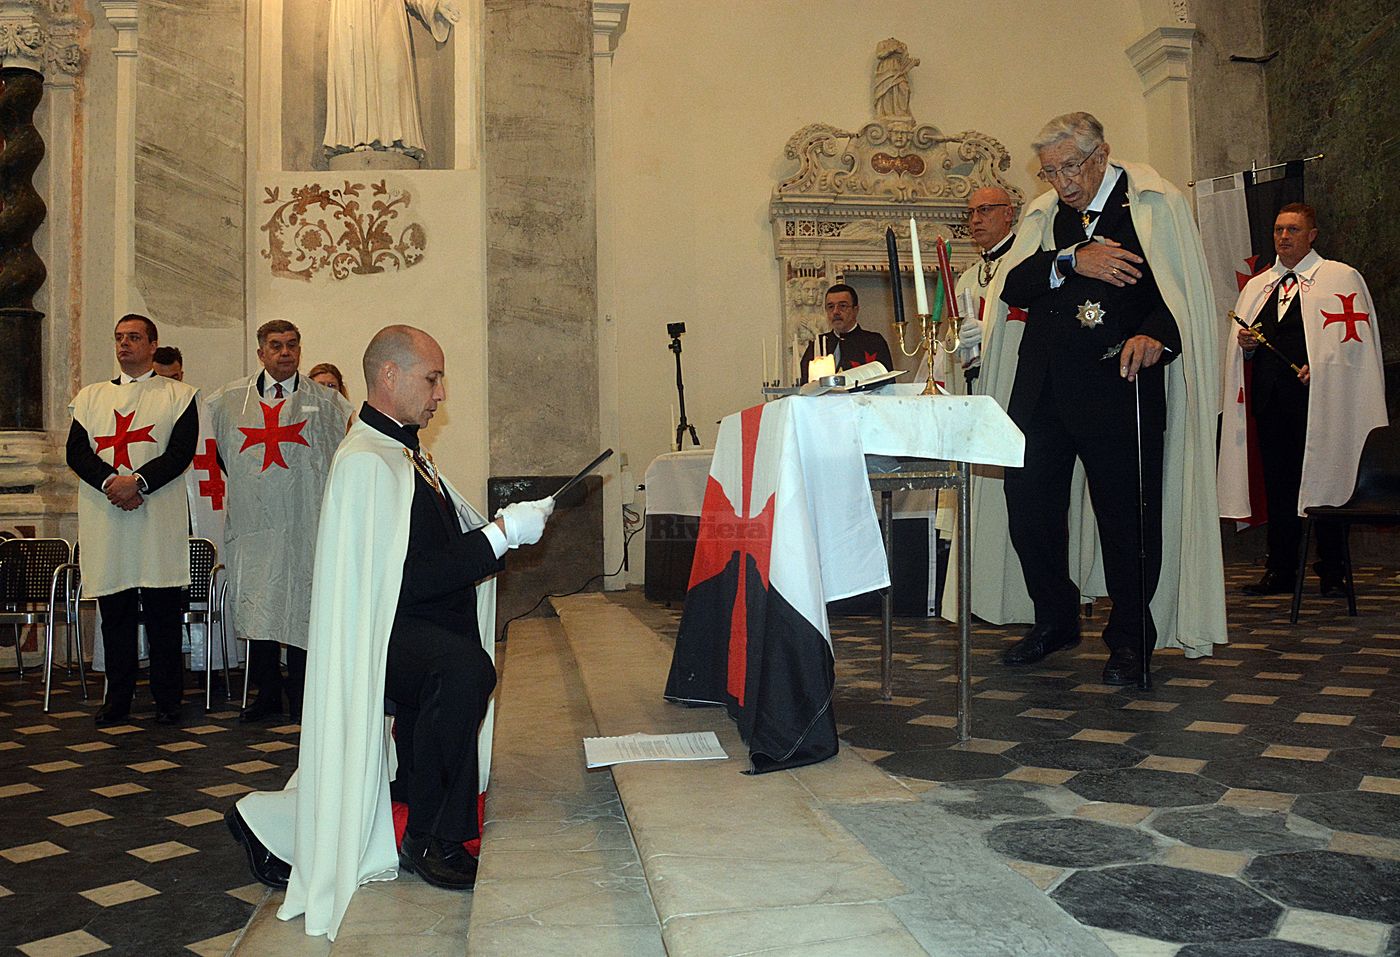 Domizio Cipriani Cavalieri Templari ex chiesa San Francesco Ventimiglia 1 dicembre 2018_35